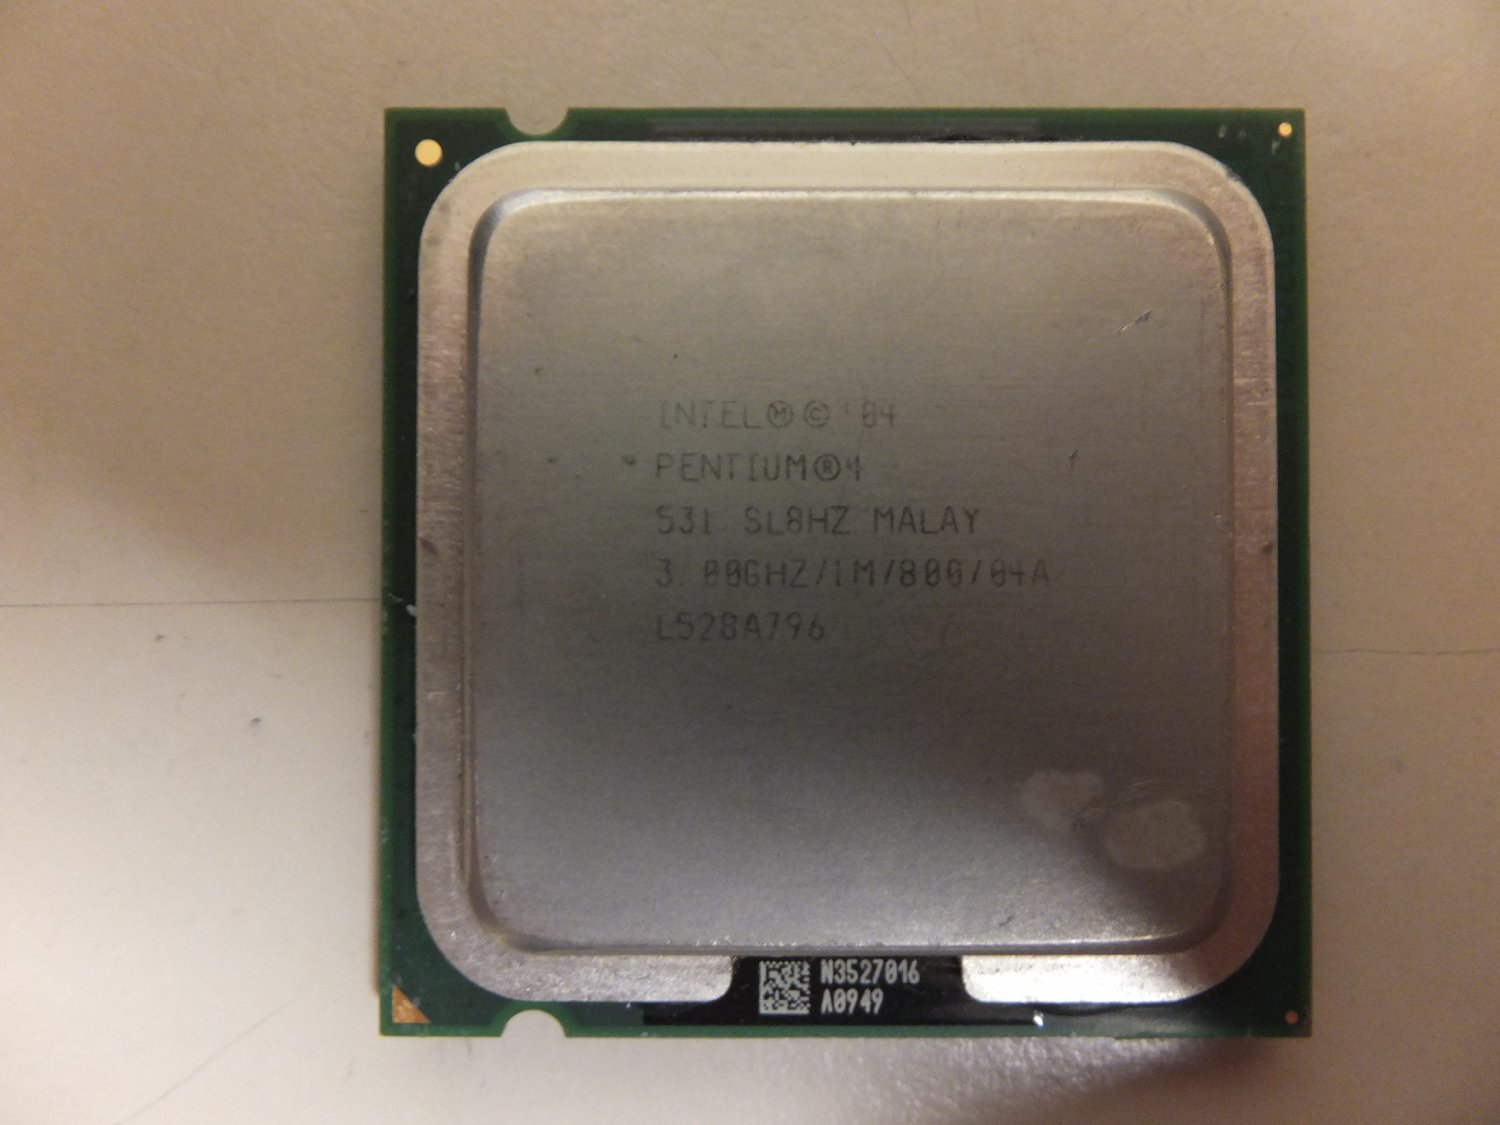 Intel pentium 4 3.00. Intel Pentium 4 CPU 3.00GHZ 3.00GHZ. Intel 04 Pentium 4 3.00GHZ/1m/800/04a. Процессор Intel Pentium 4 531 lga775.